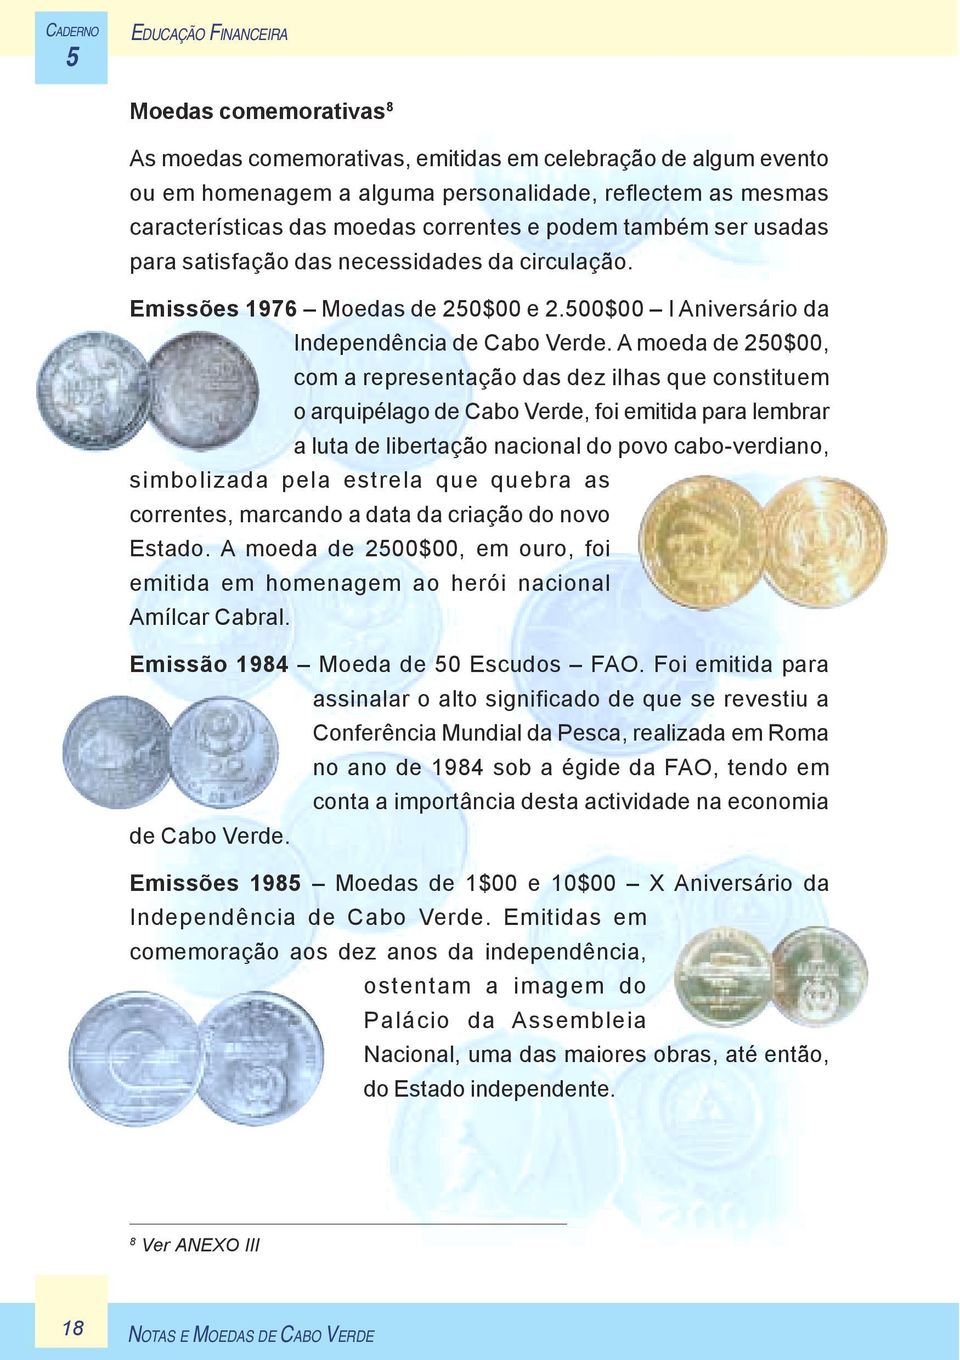 A moeda de 20$00, com a representação das dez ilhas que constituem o arquipélago de Cabo Verde, foi emitida para lembrar a luta de libertação nacional do povo cabo-verdiano, simbolizada pela estrela